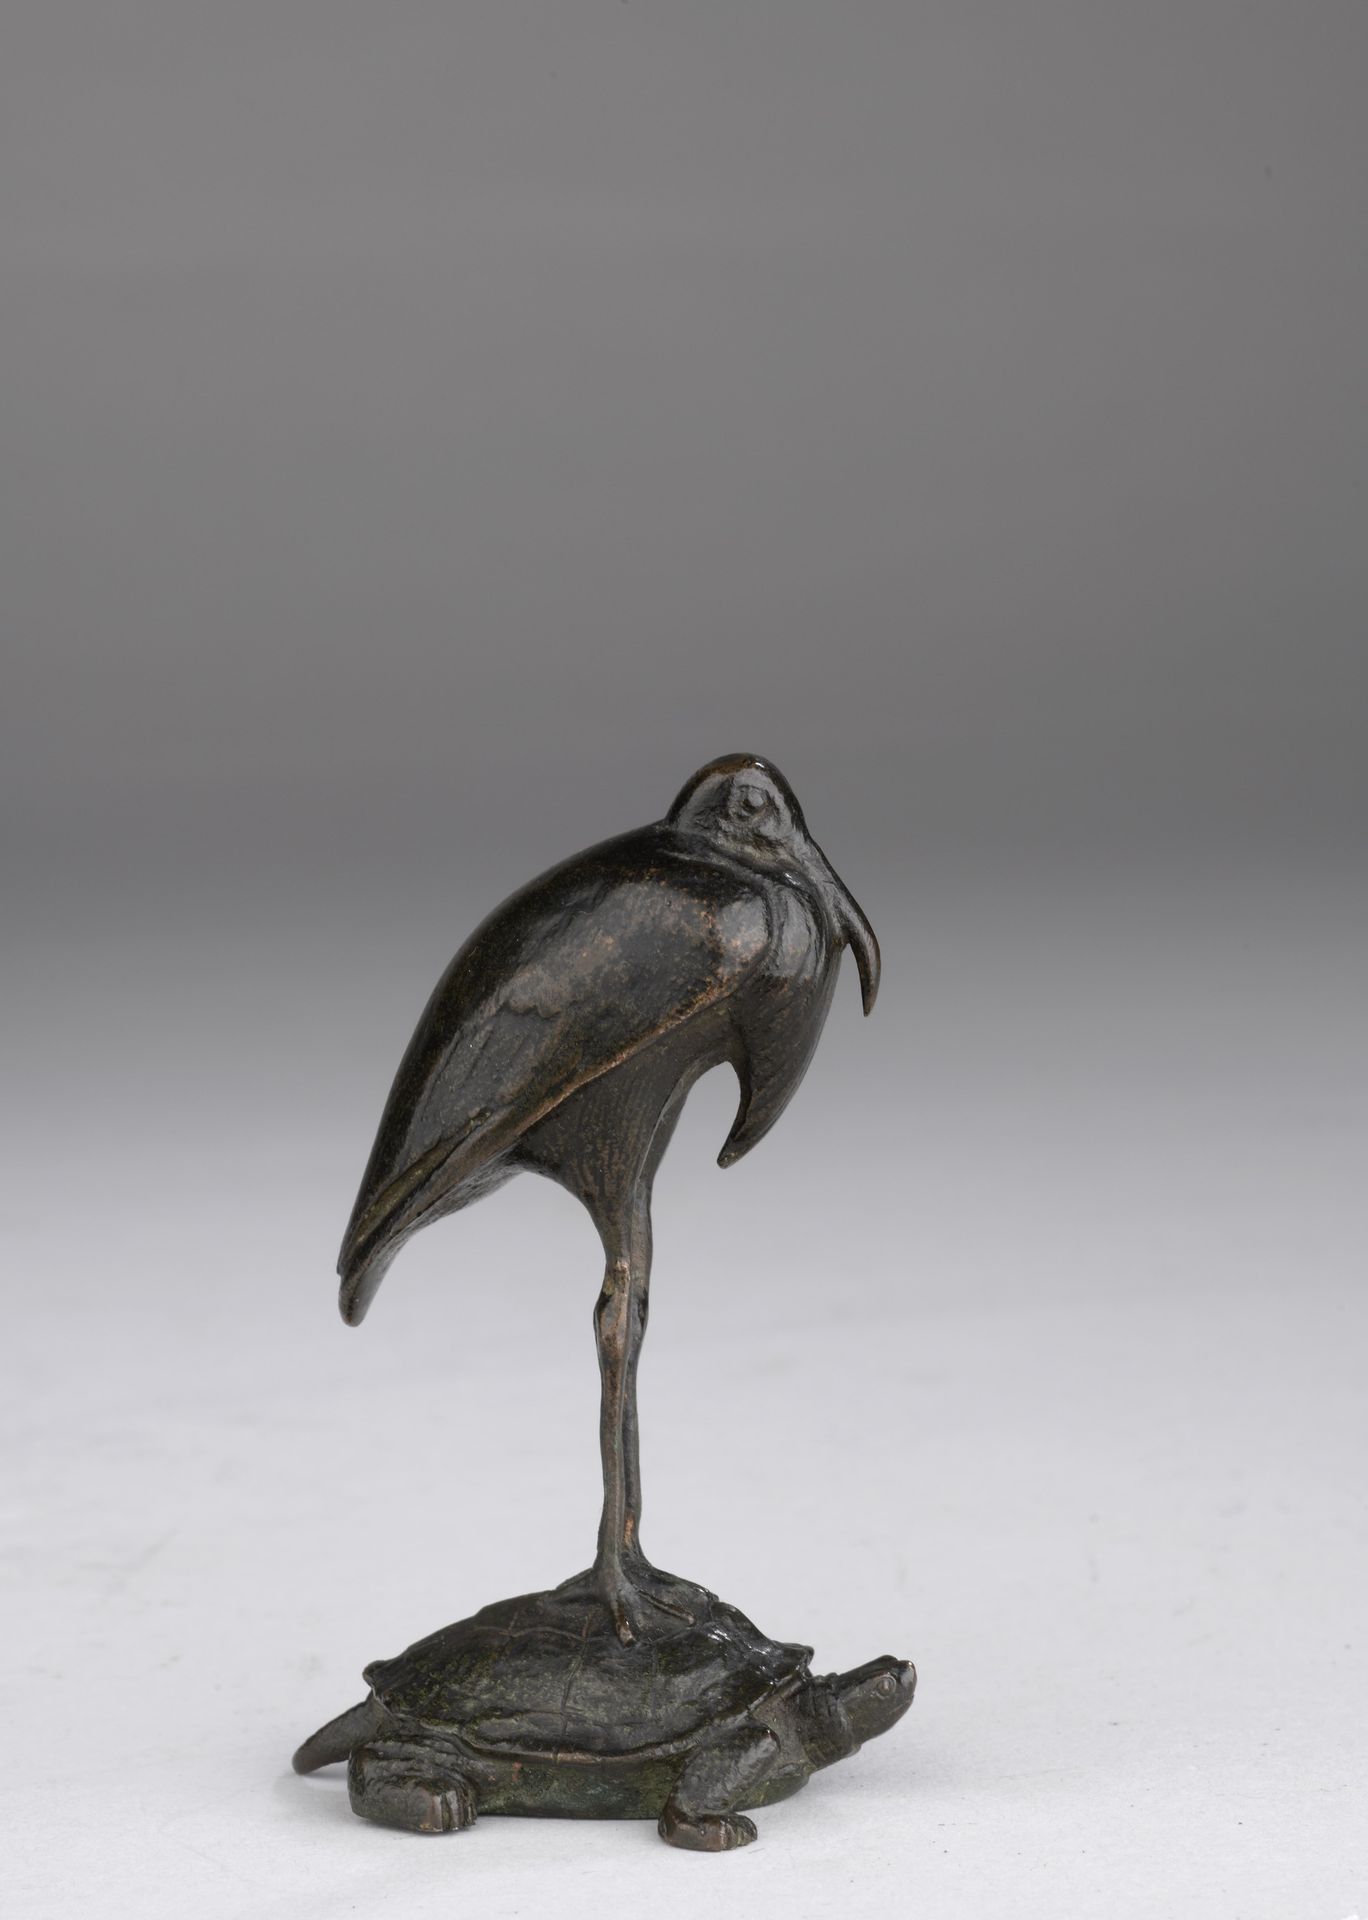 Null 安托万-路易-巴耶(1795-1875)
乌龟上的鹳鸟
由巴耶工作室在1845年至1855年之间铸造 
青铜，带有棕黑色的铜锈
底部印有 "BARYE&hellip;